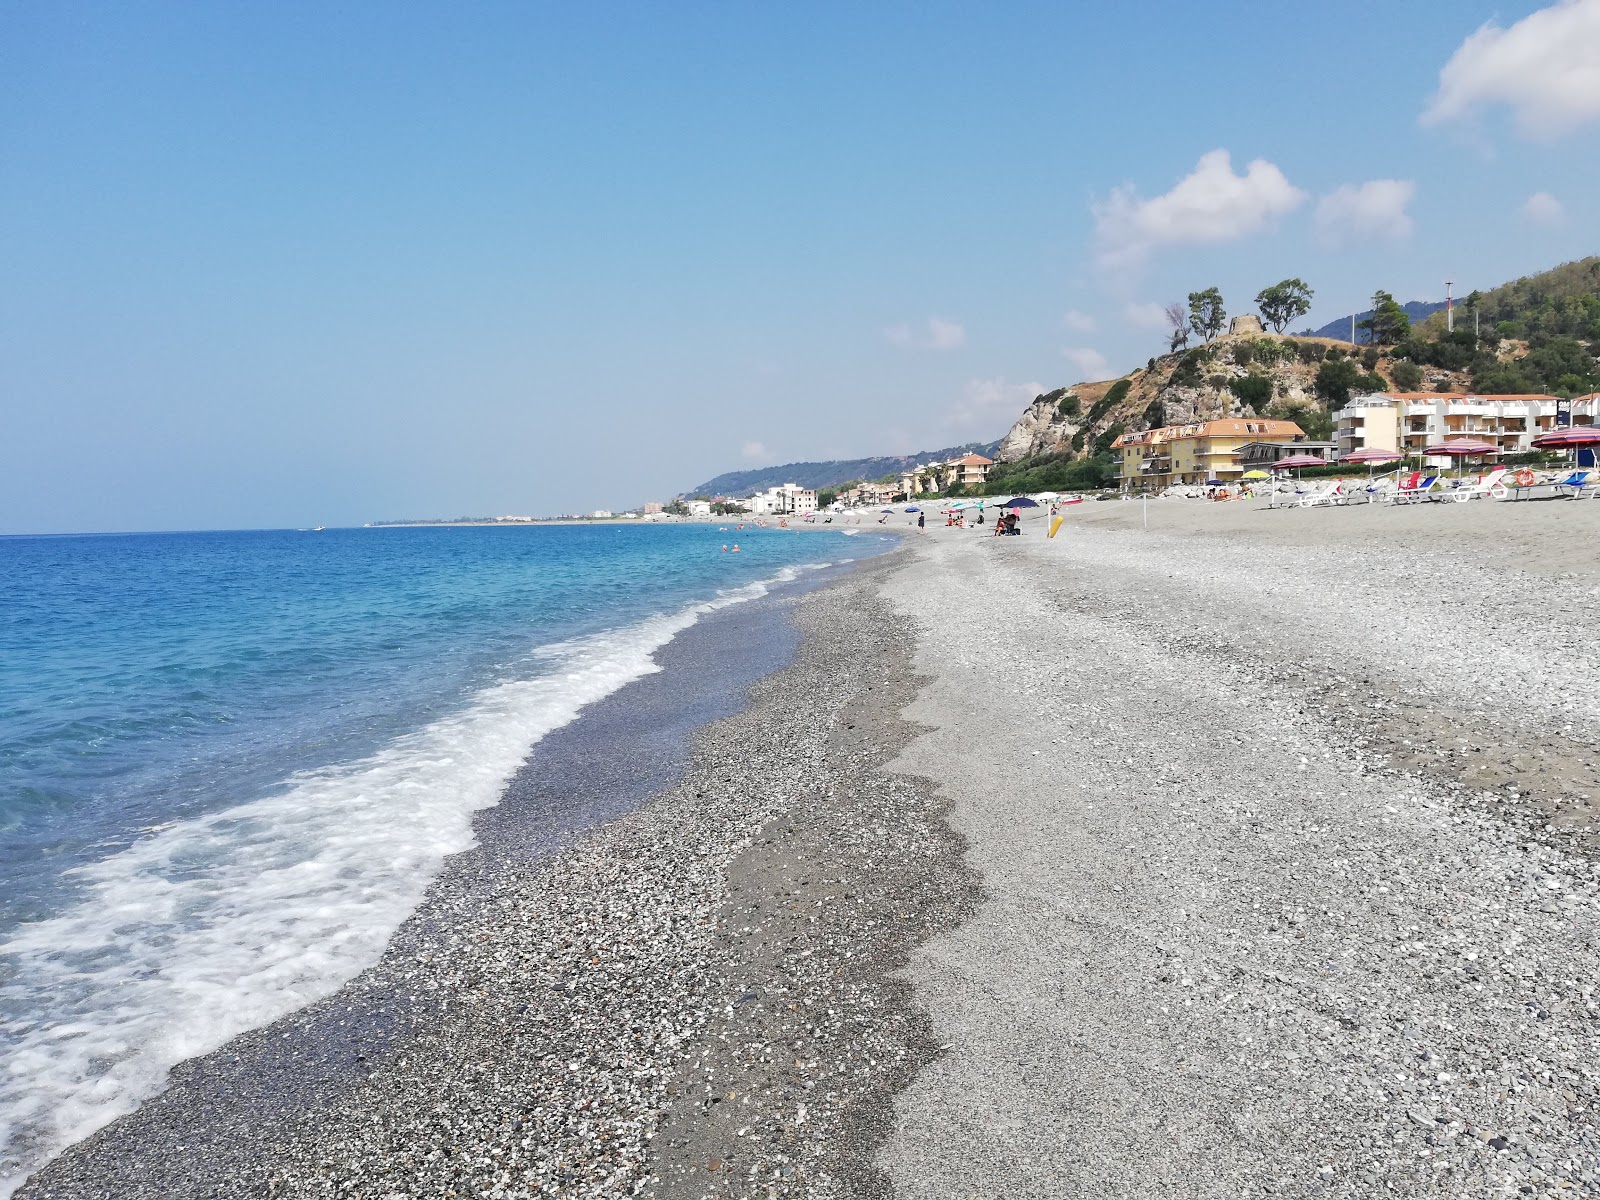 Photo of Cartolano beach with gray fine pebble surface